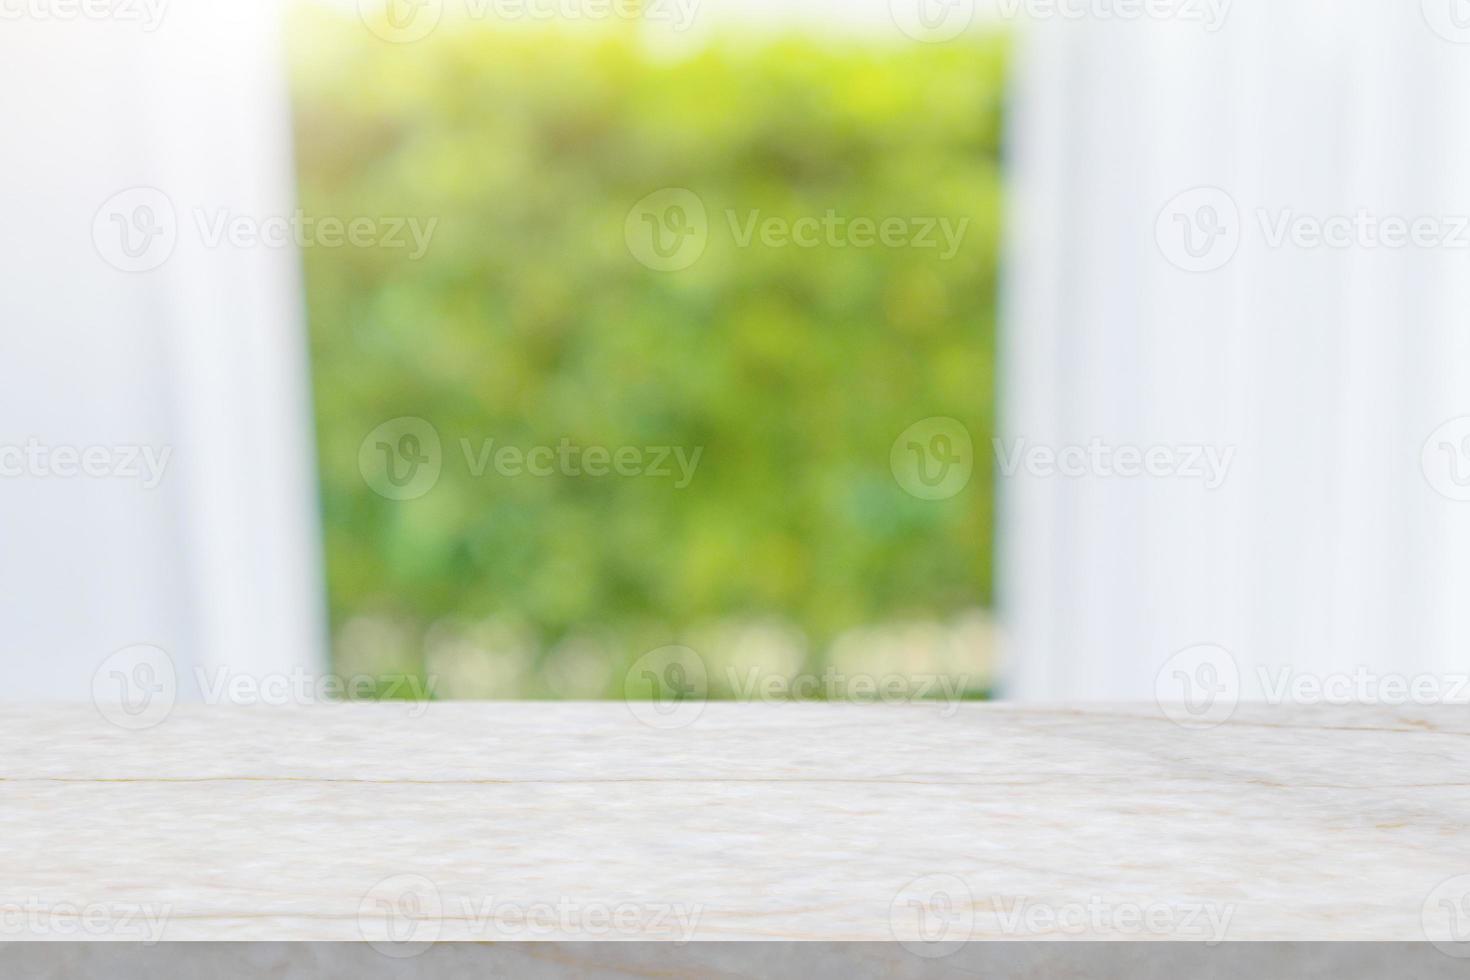 vuoto marmo tavolo superiore con sfocatura finestra tenda sfondo per Prodotto Schermo foto